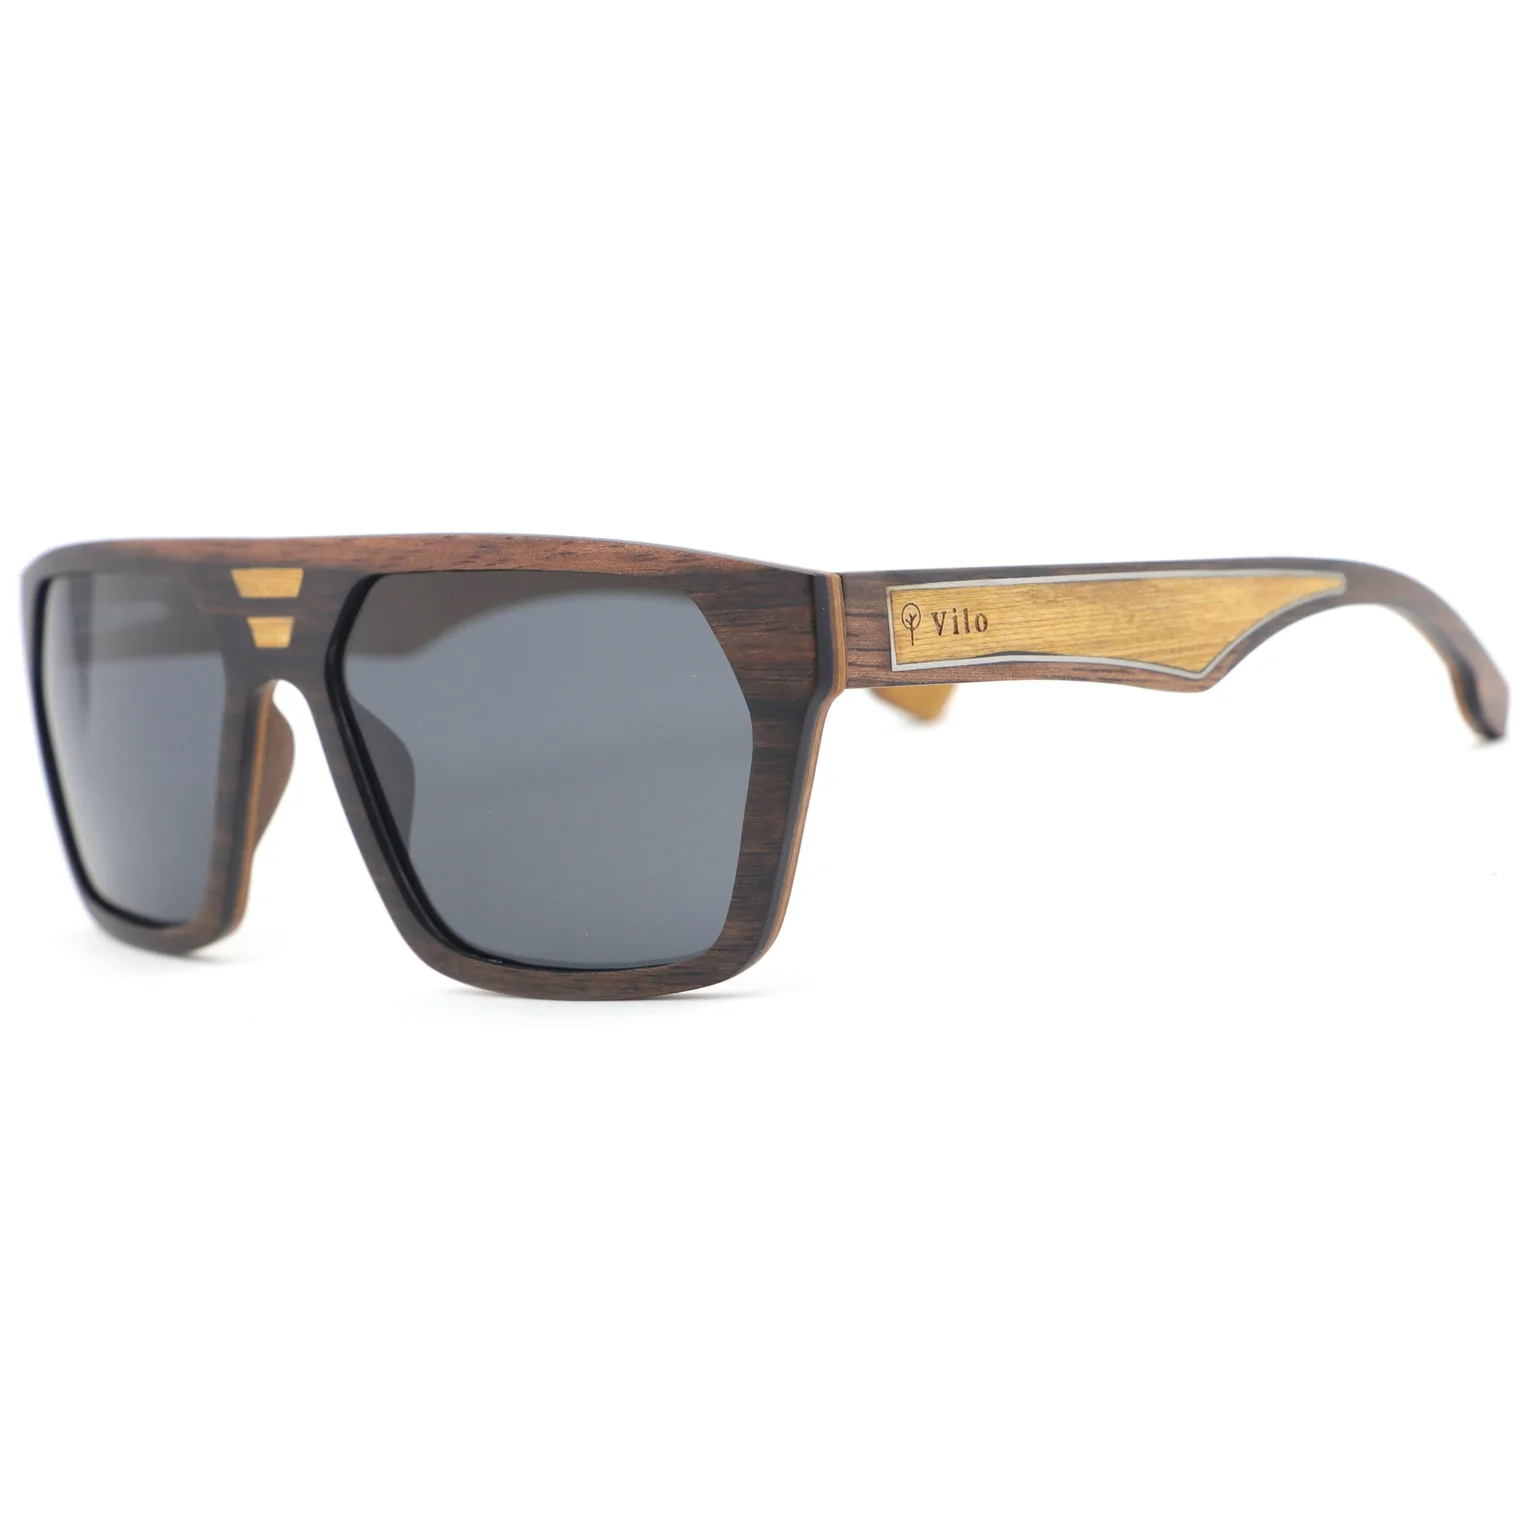 Rio - Wooden Sunglasses